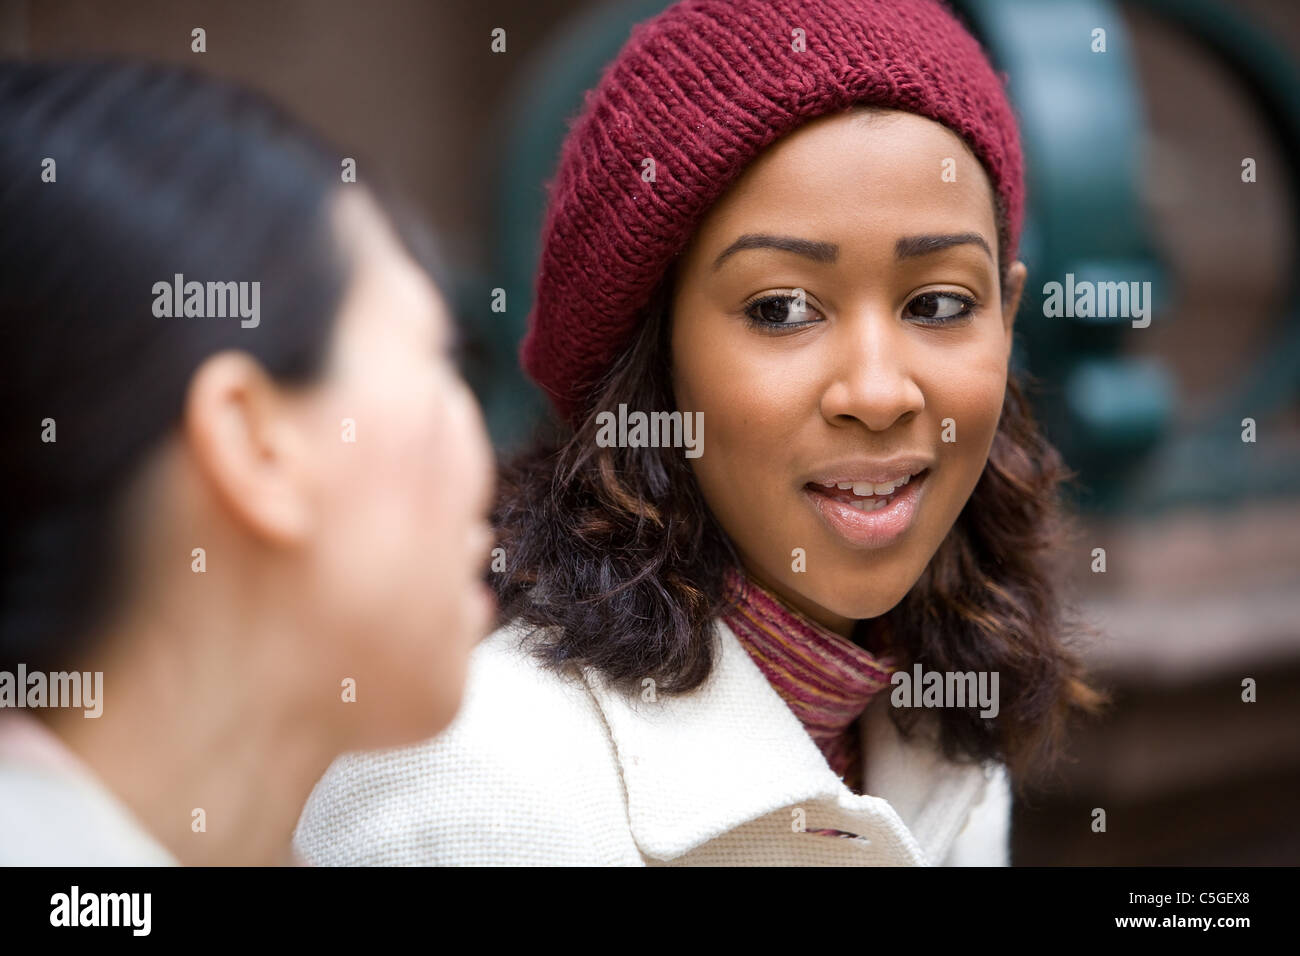 Zwei Geschäftsfrauen mit einer zufälligen Begegnung oder Diskussion in der Stadt. Geringe Schärfentiefe. Stockfoto